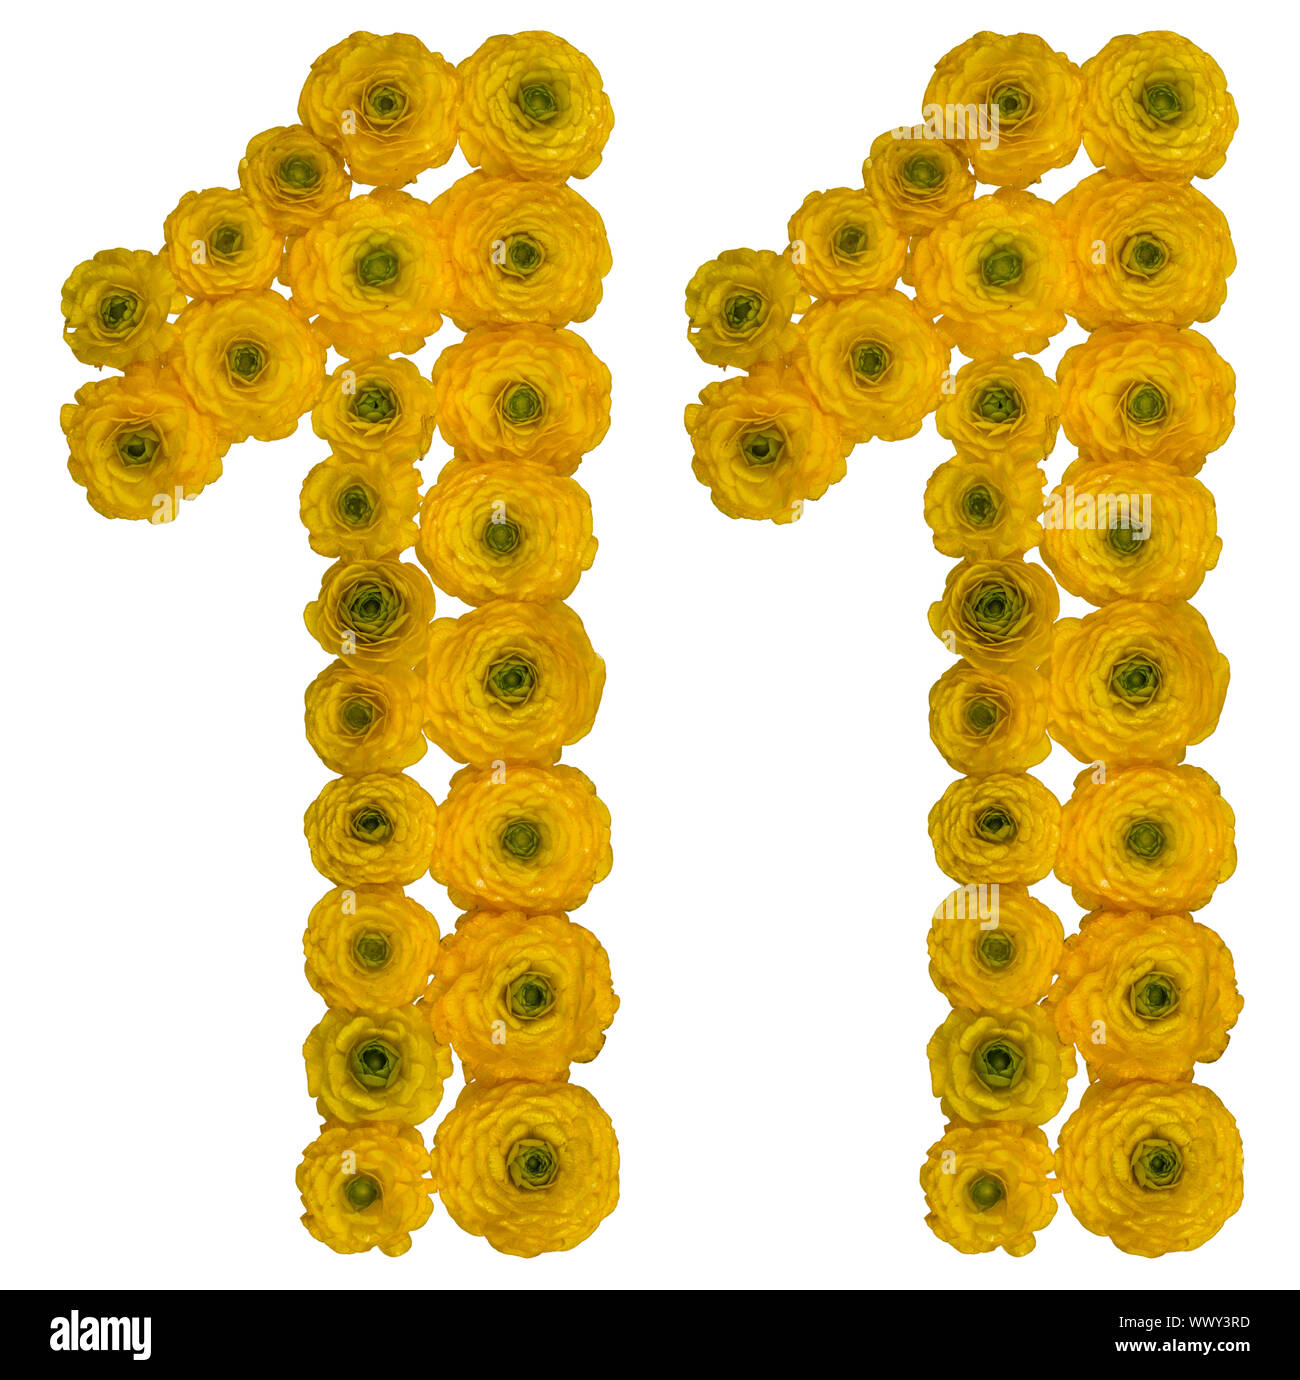 Numero arabo 11, undici, rom fiori gialli di ranuncolo, isolato su sfondo bianco Foto Stock